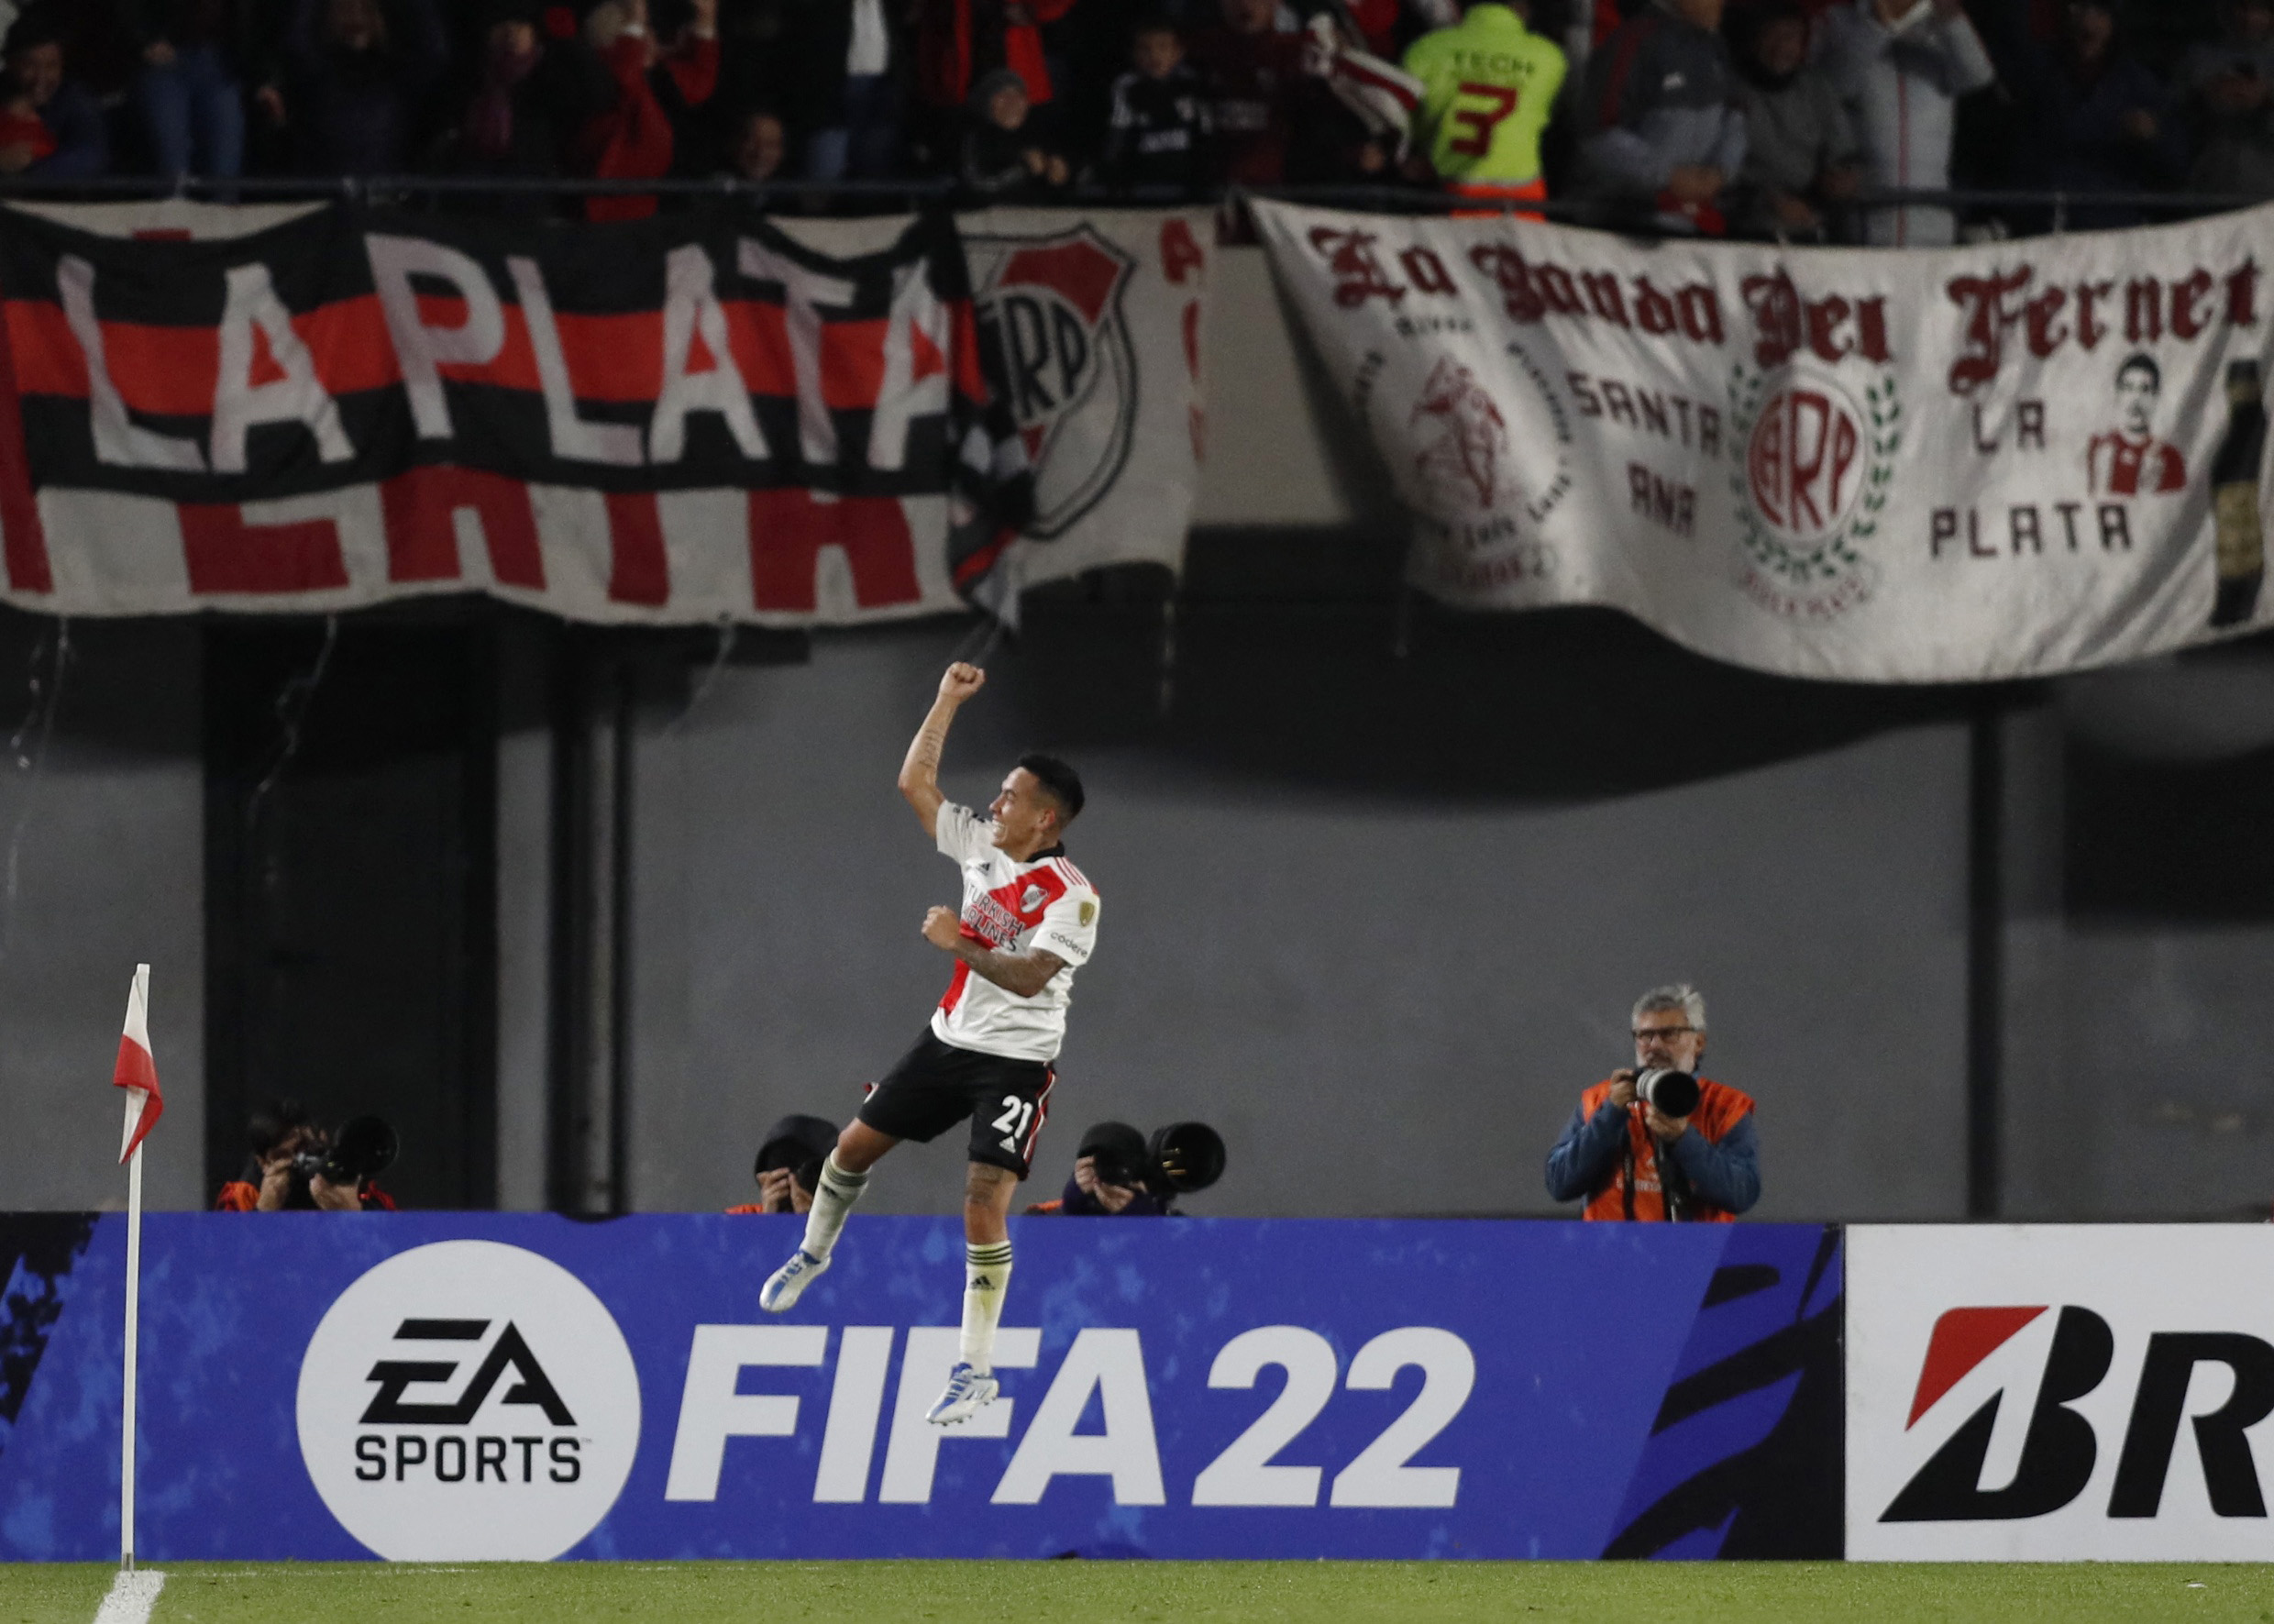 Salto y festejo de Barco, autor del último gol del partido (REUTERS/Agustin Marcarian)